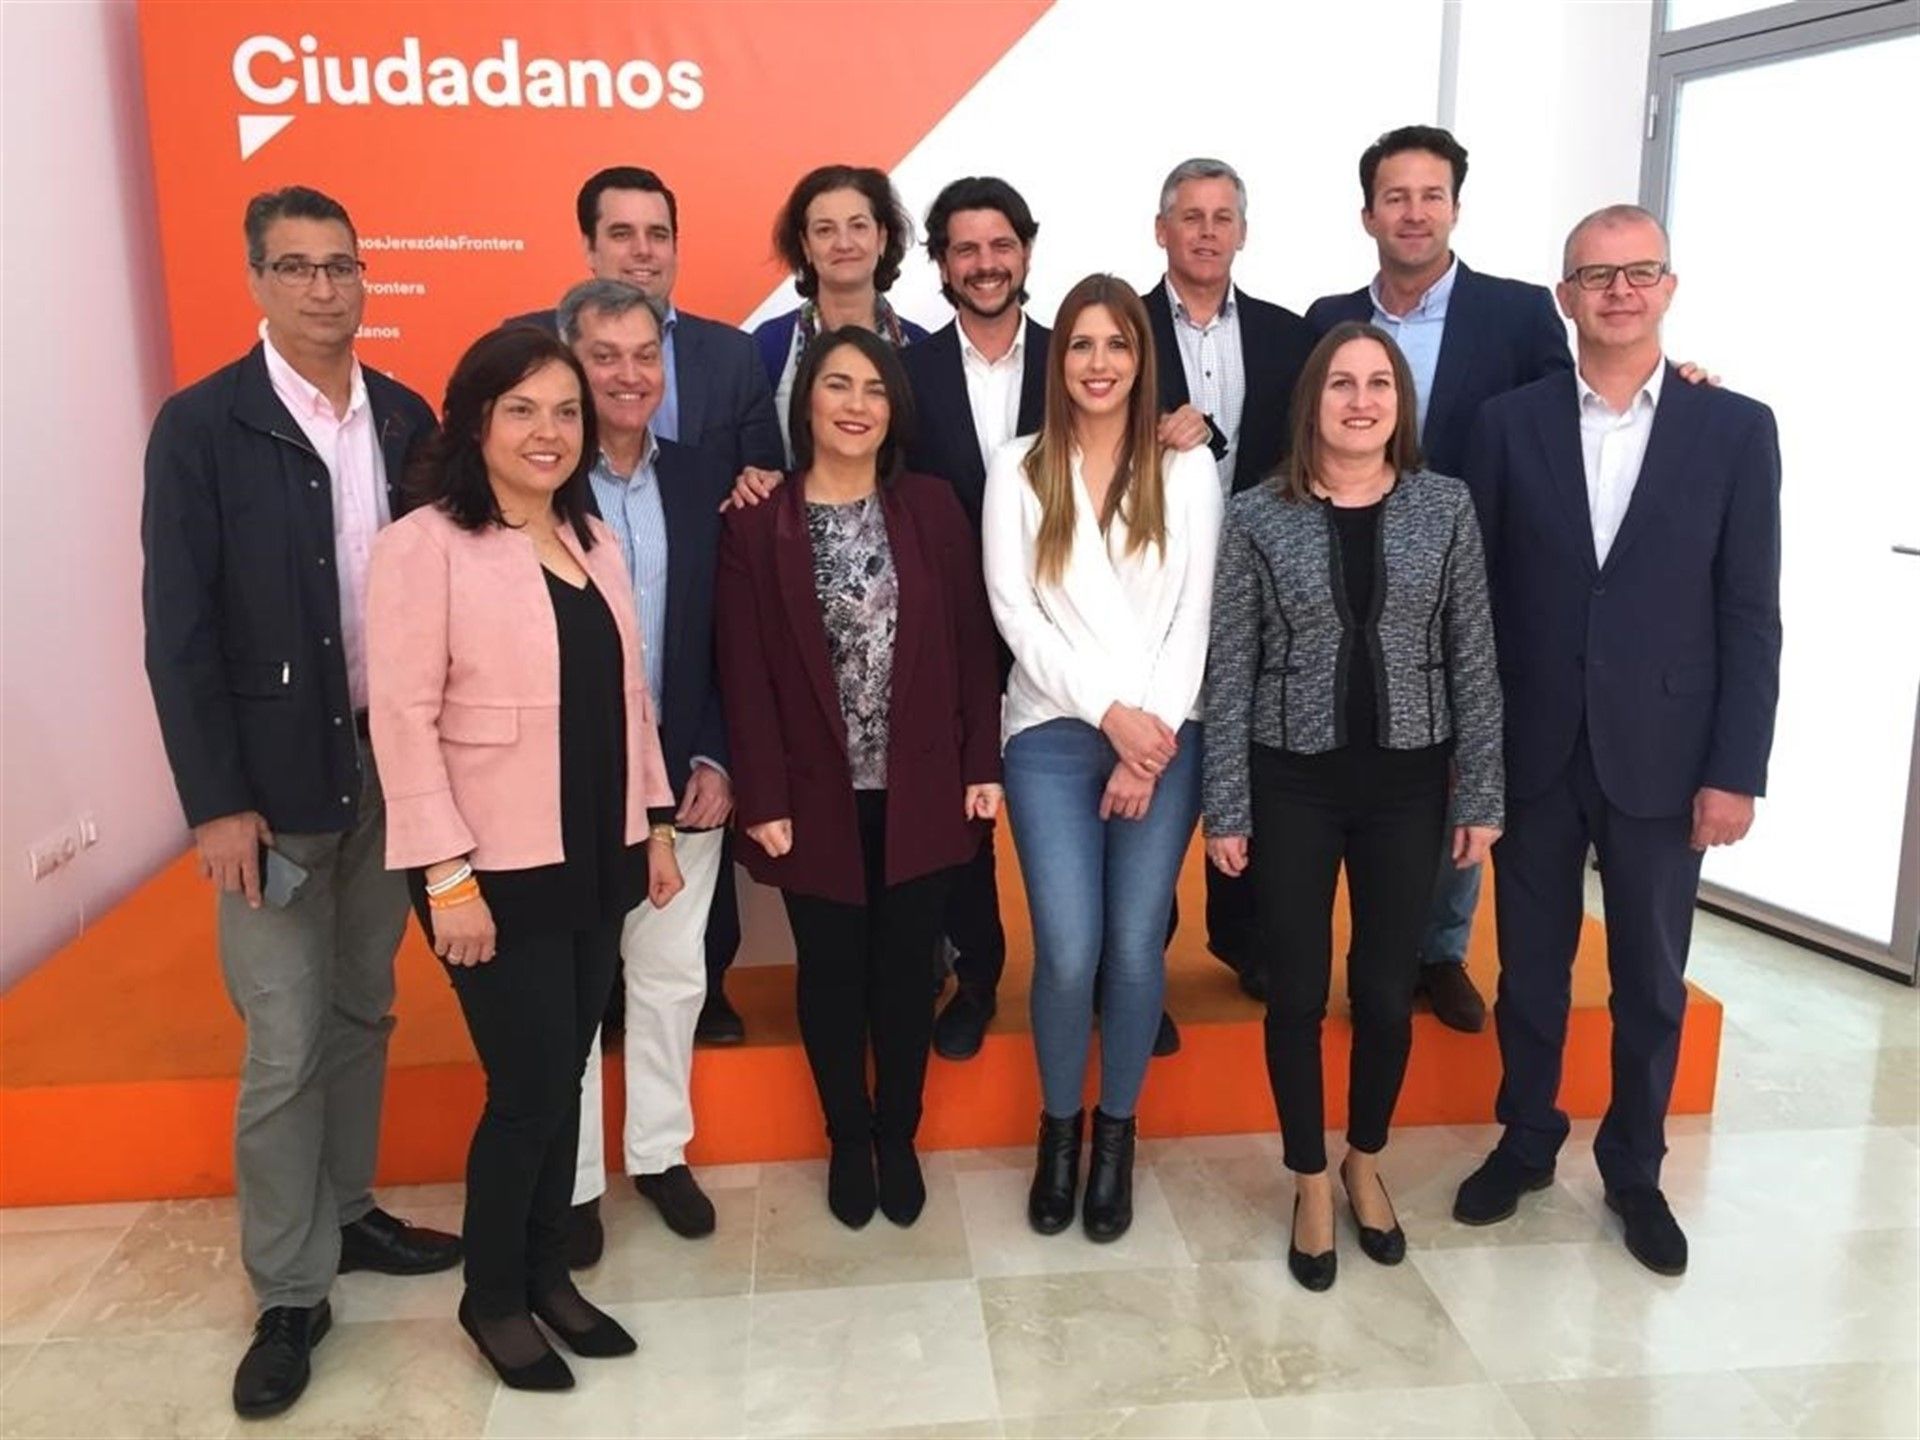 Candidatos de Ciudadanos por Cádiz el 28A.